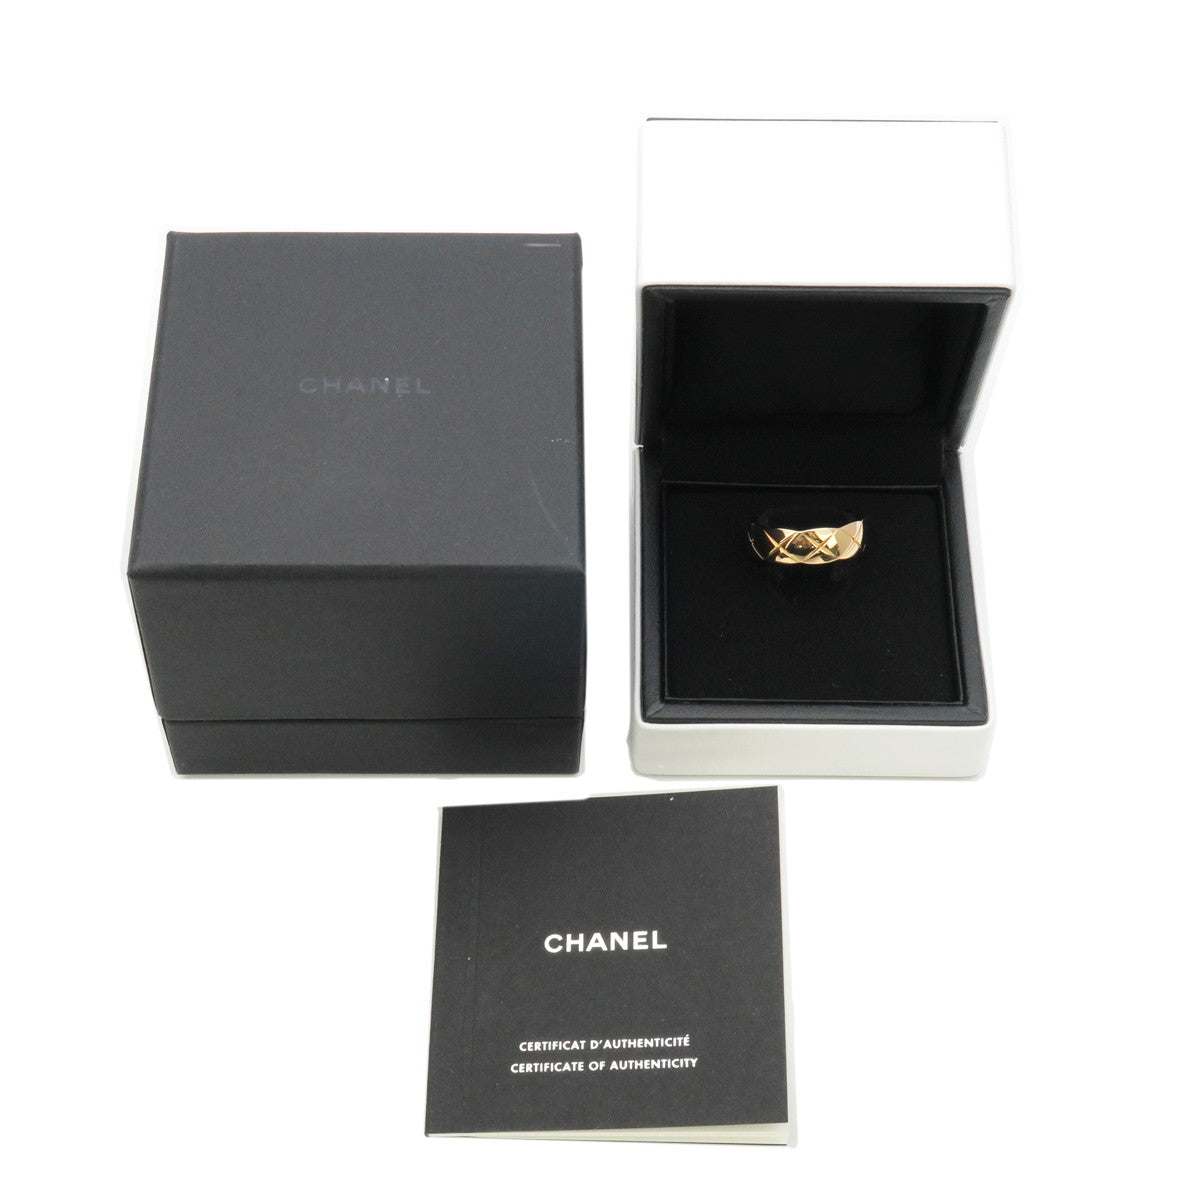 Chanel 19 handbag, Shiny lambskin, gold-tone, silver-tone